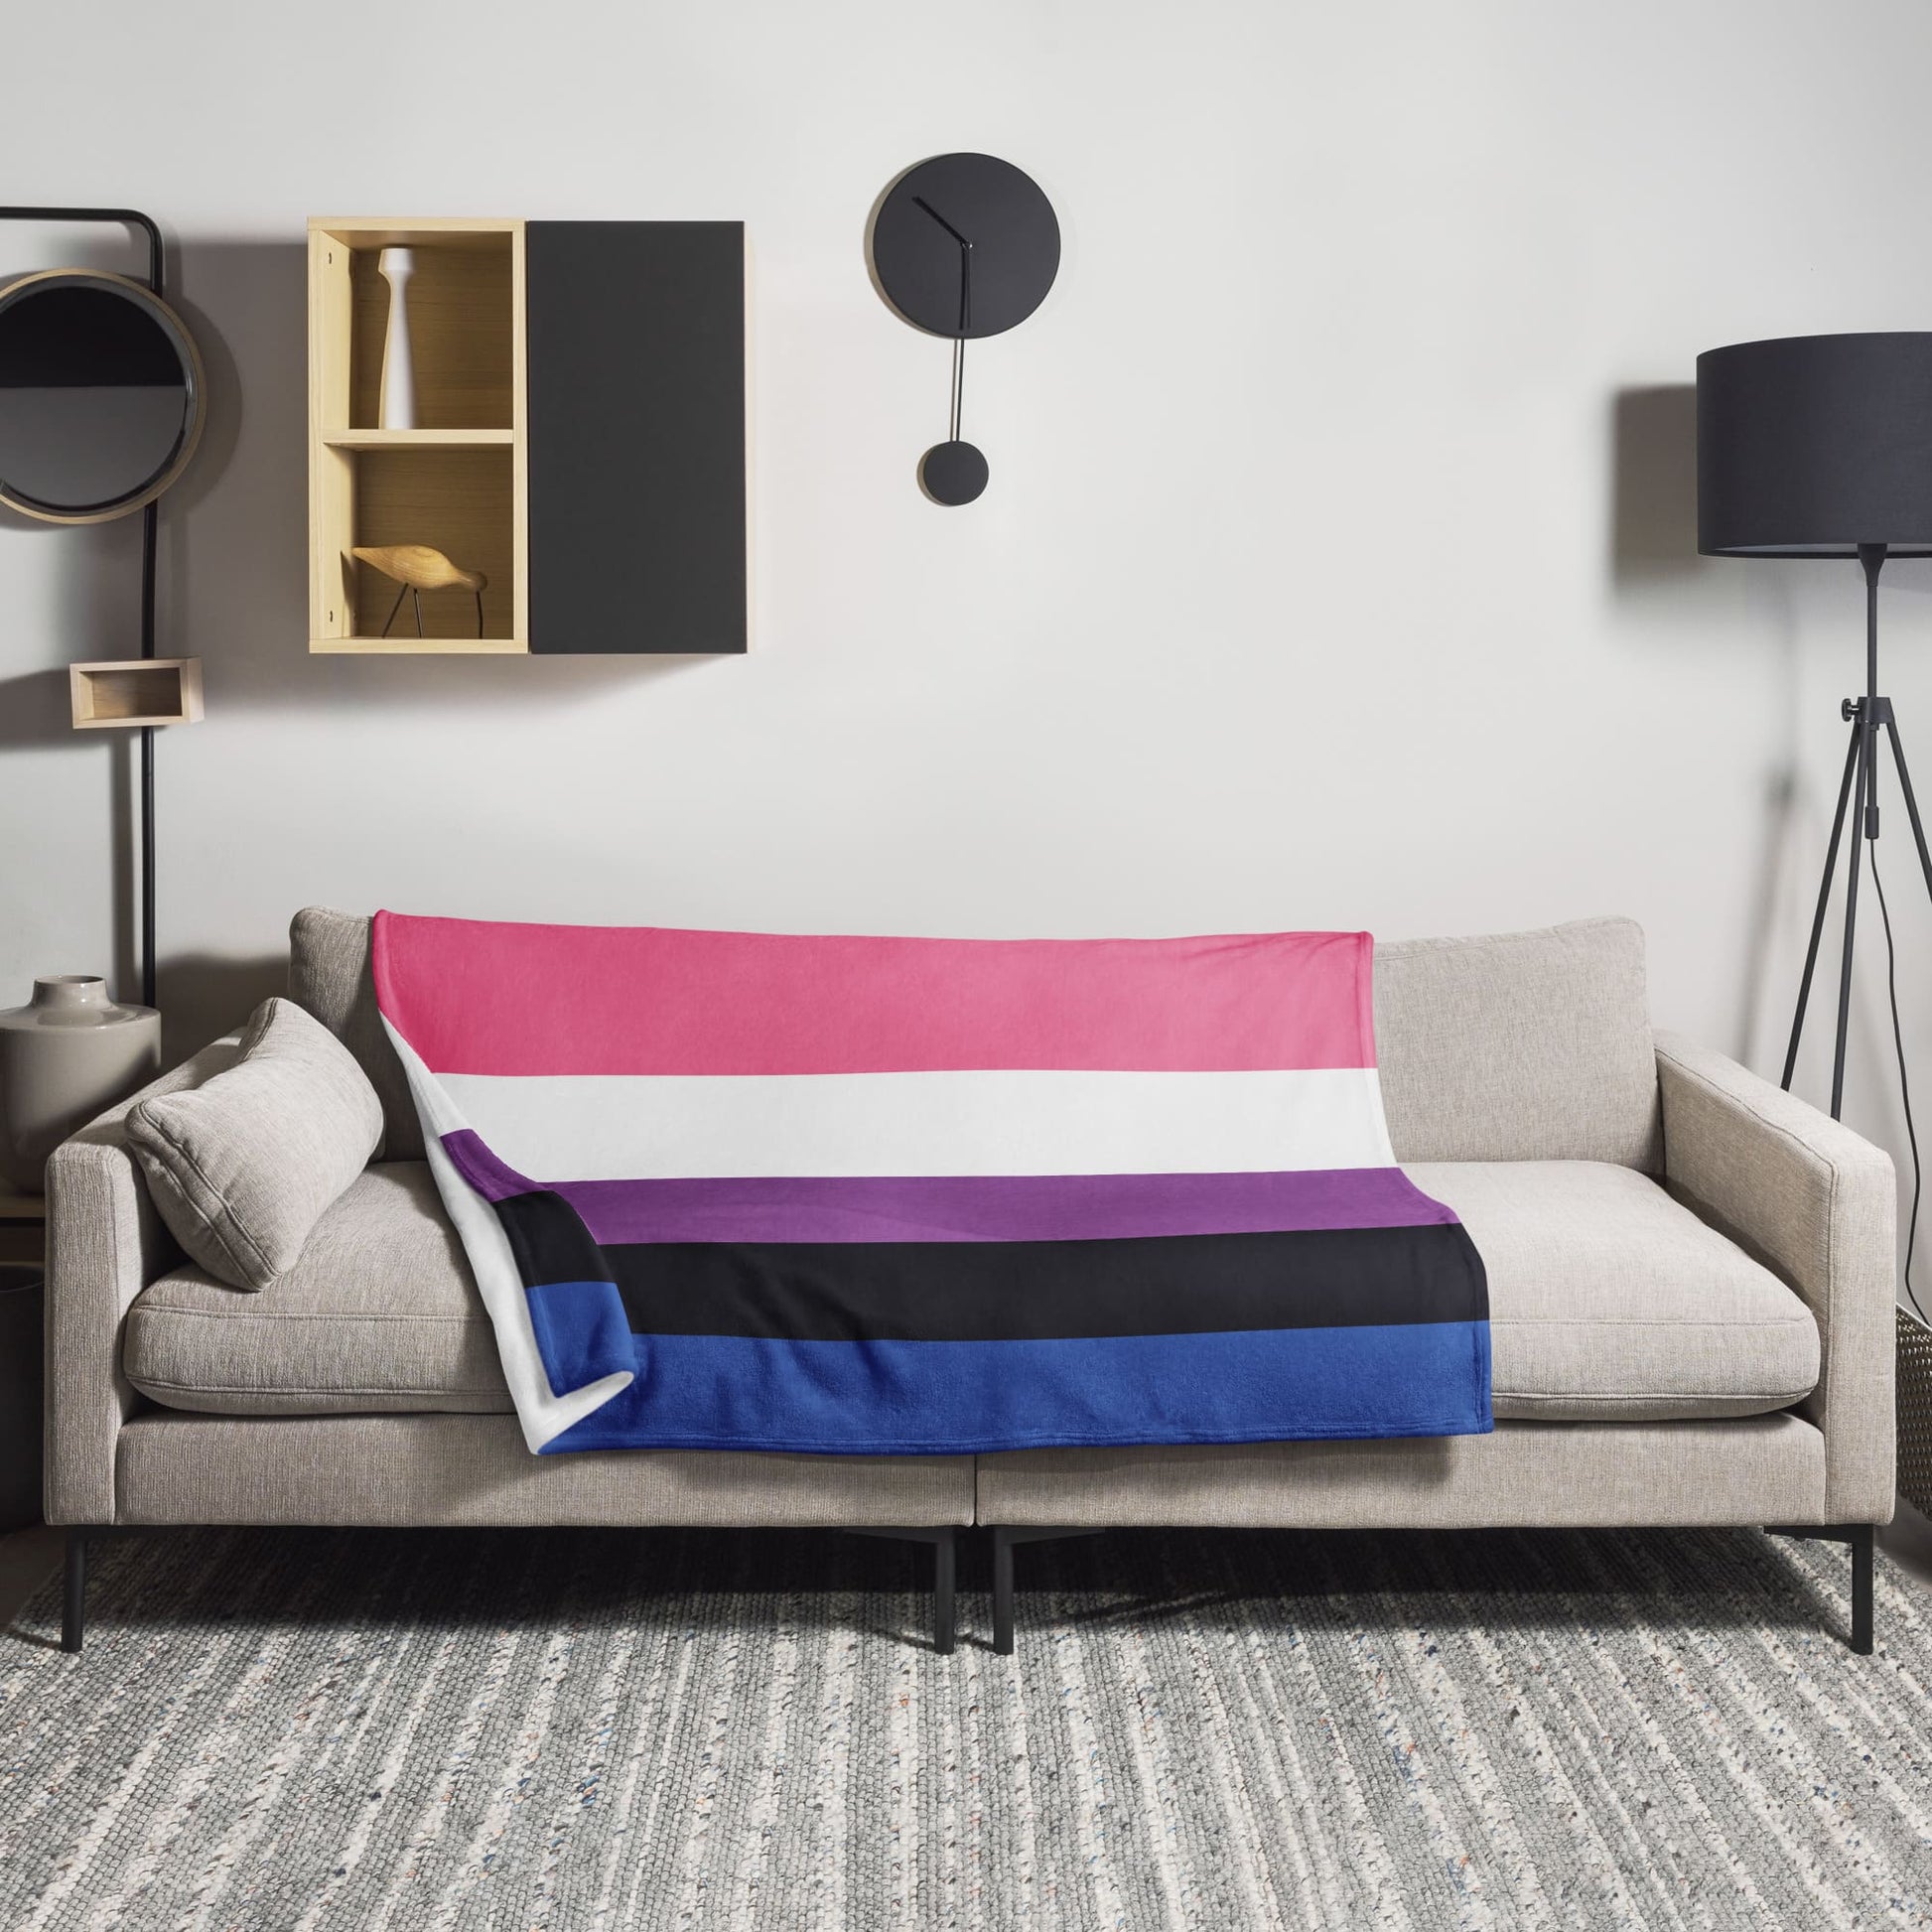 genderfluid blanket on sofa